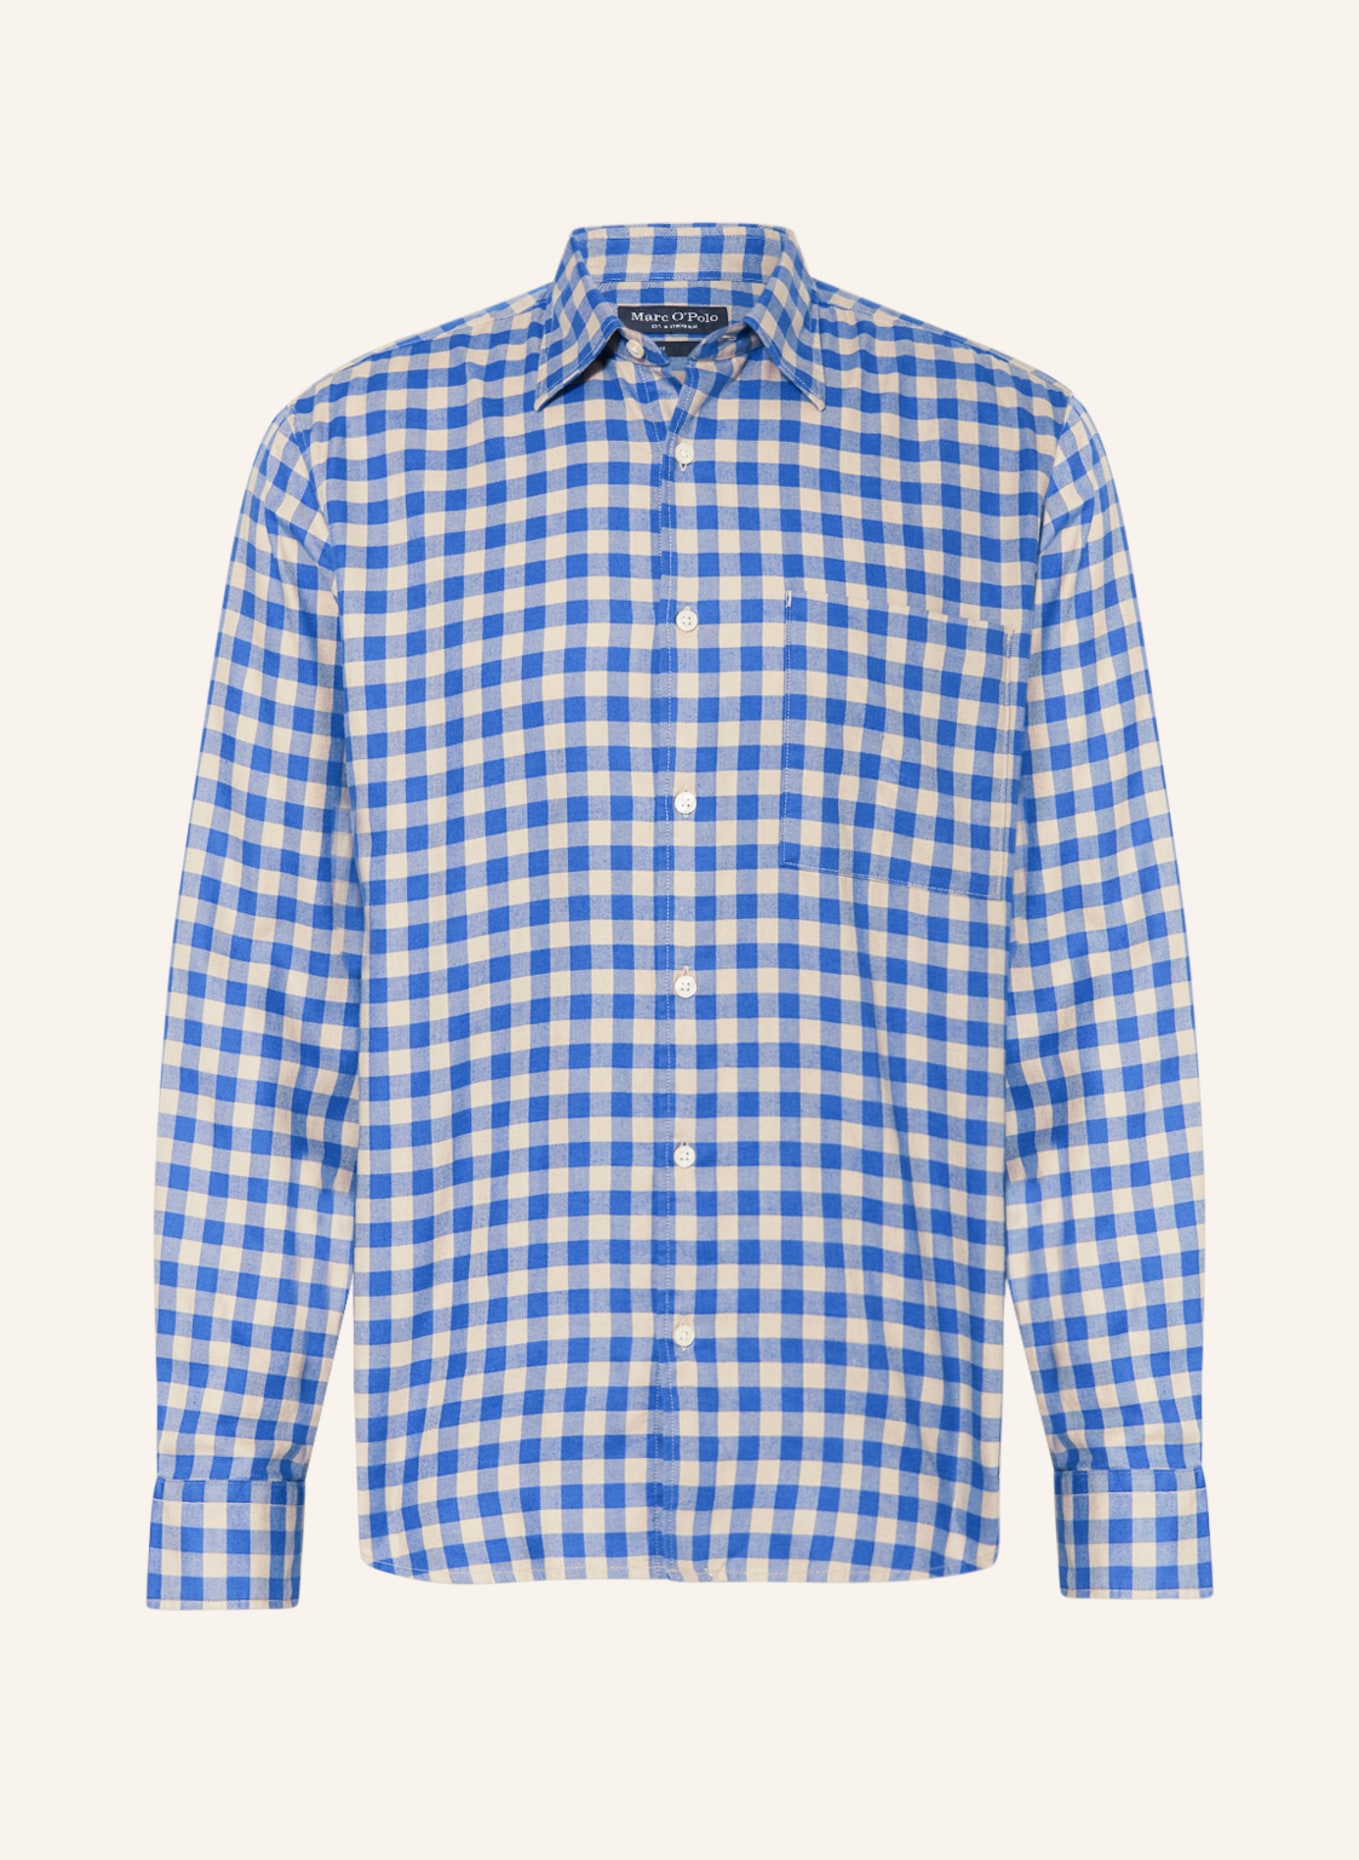 Marc O'Polo Shirt regular fit, Color: BLUE/ CREAM (Image 1)